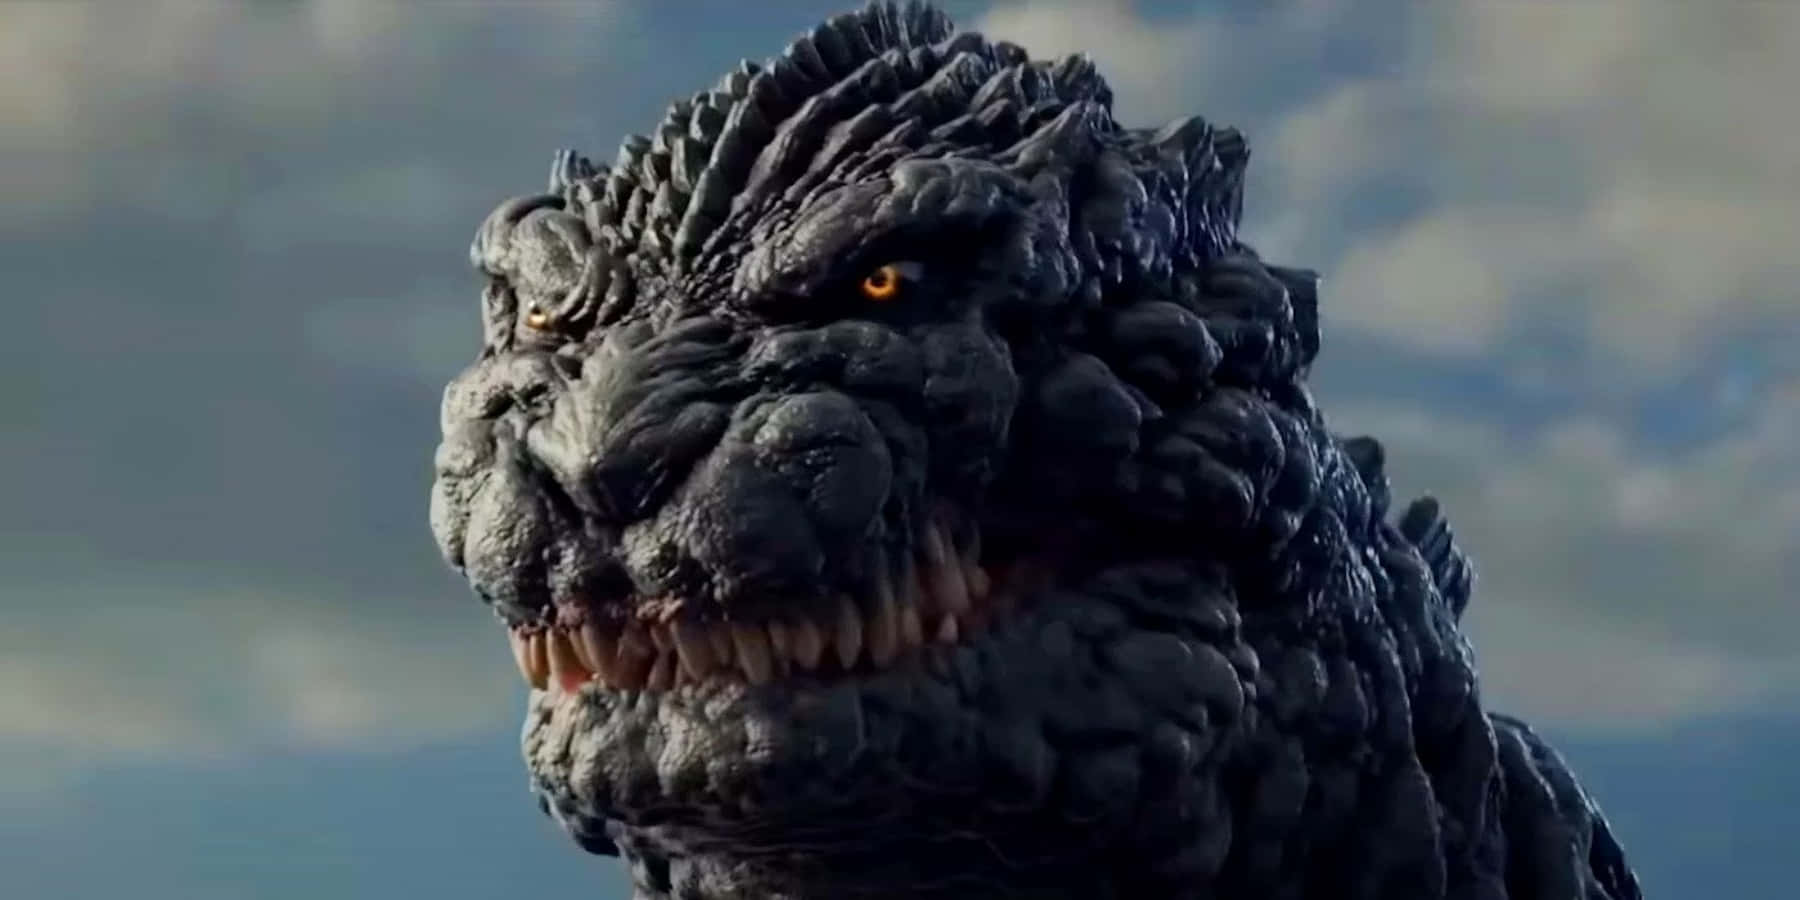 Imagende Godzilla De Cerca Con Fondo De Cielo